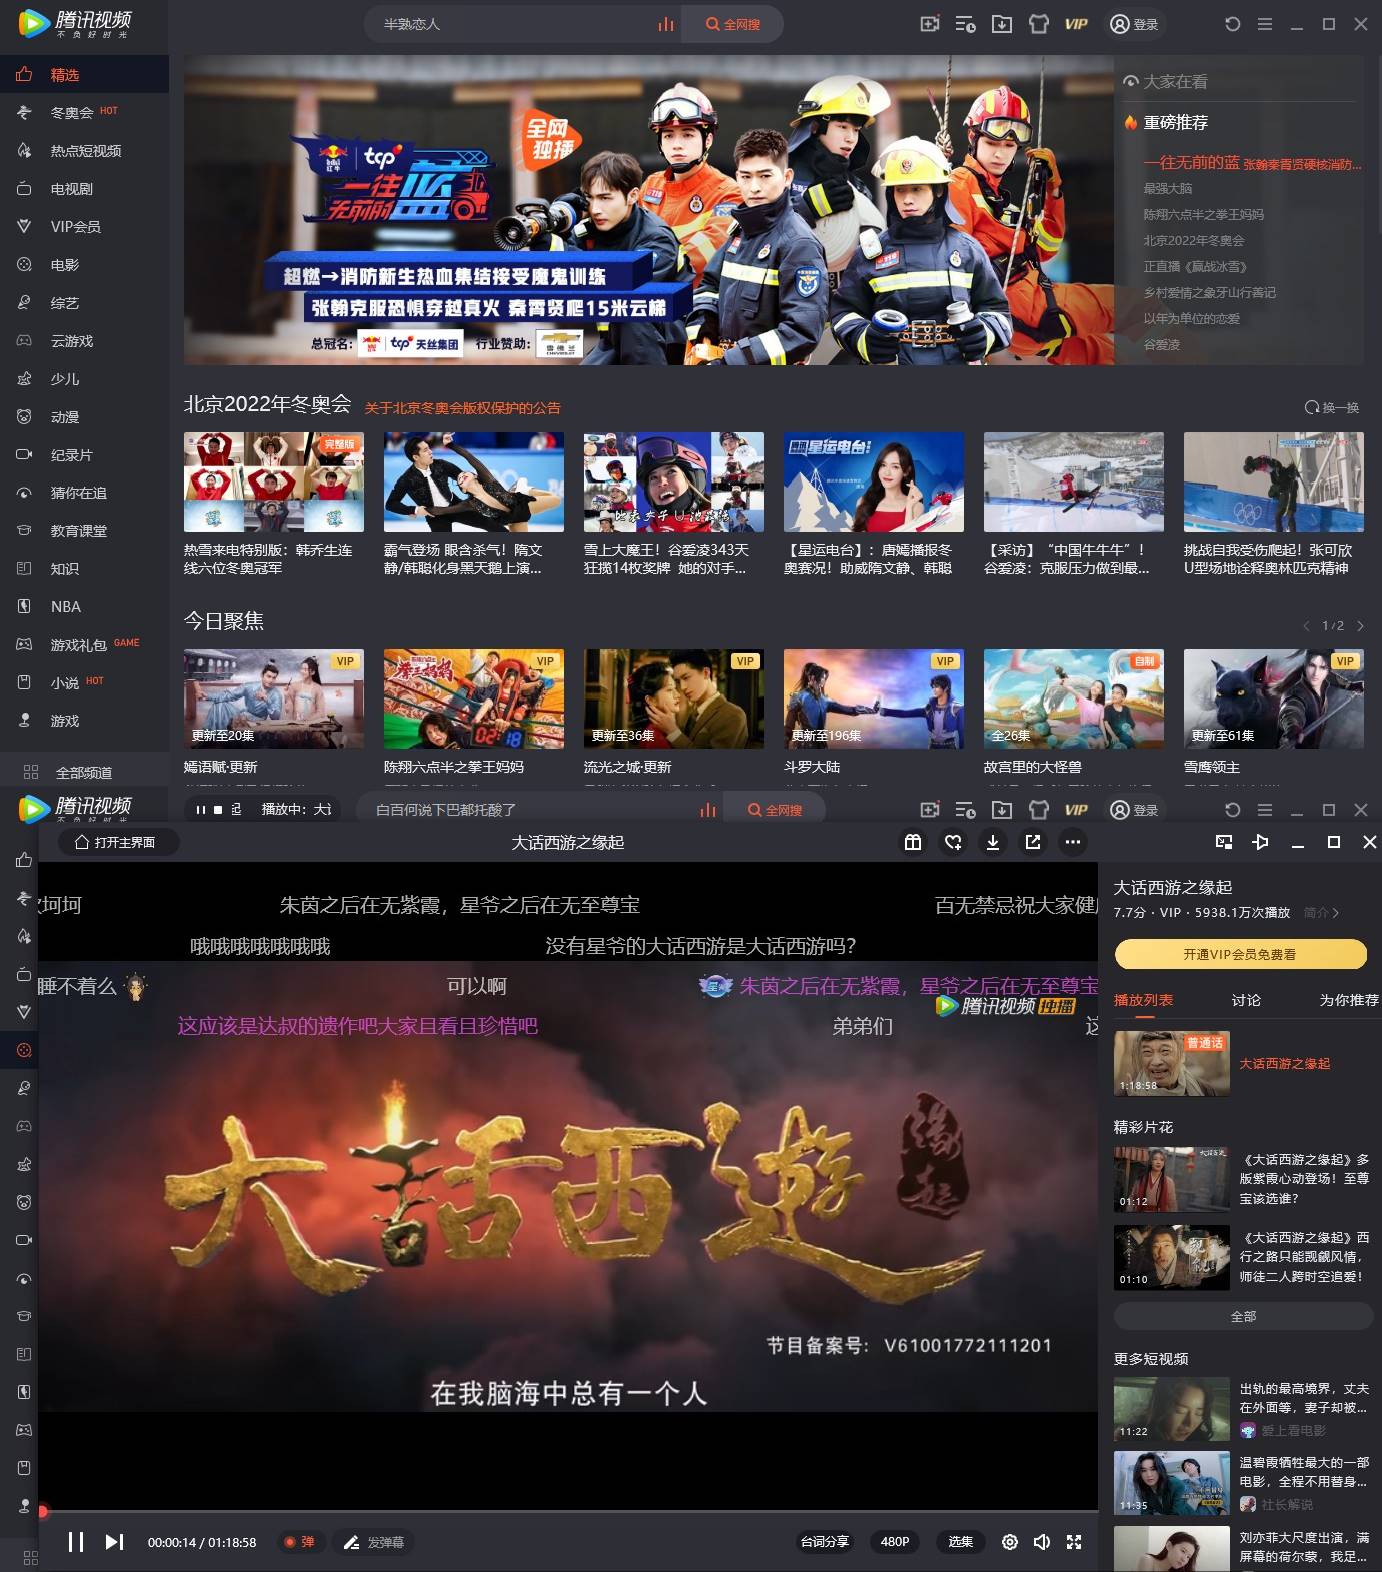 PC騰訊视频 v11.39.2014 去广告纯净版「2022.3.8」